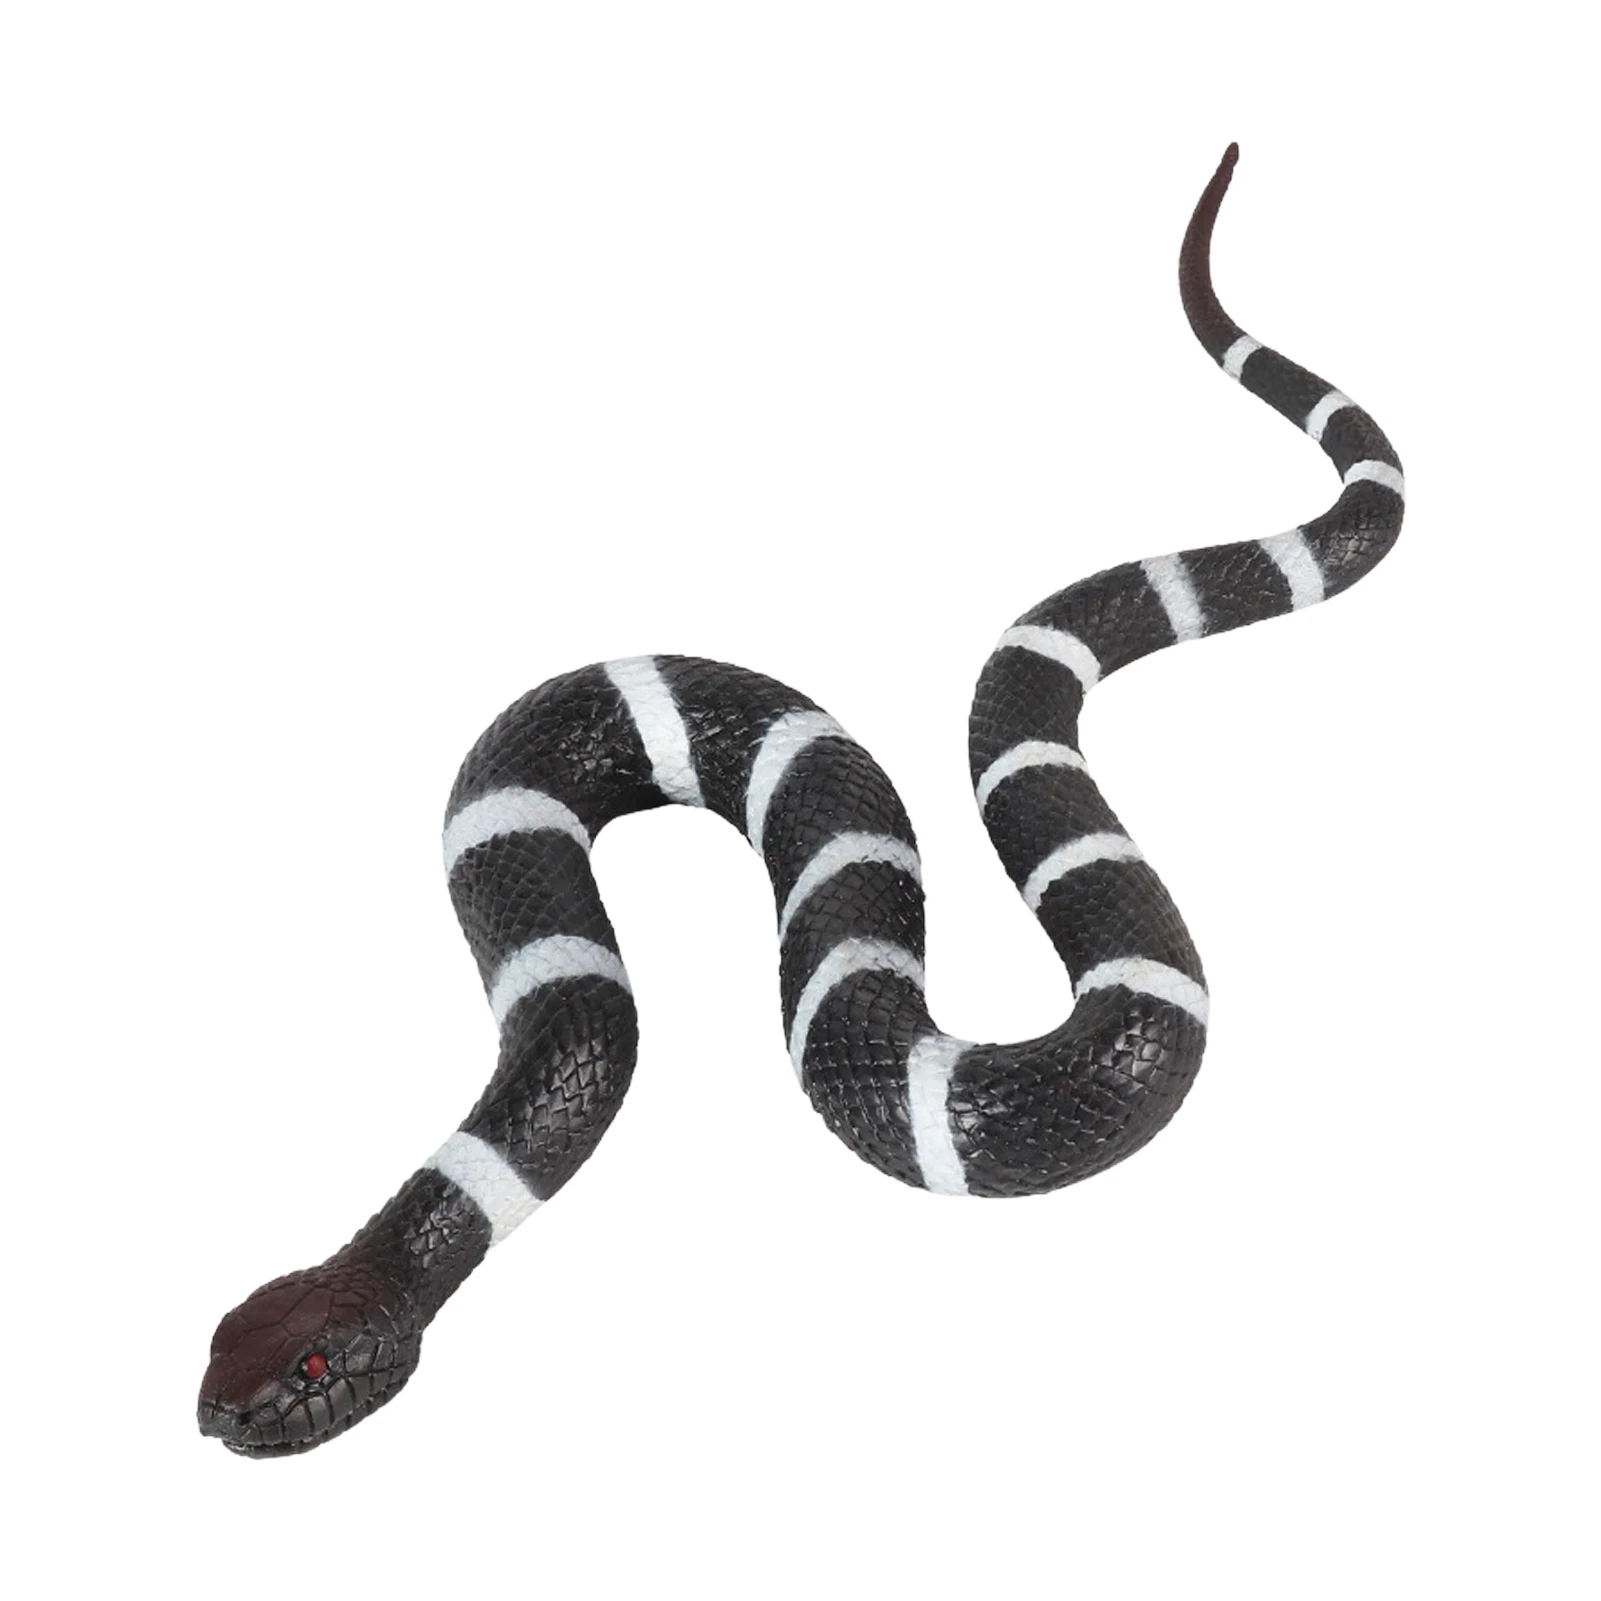 

Искусственная змея, имитация черной змеи, искусственная игрушка для сада, реквизит для пугающих птиц и украшения на Хэллоуин